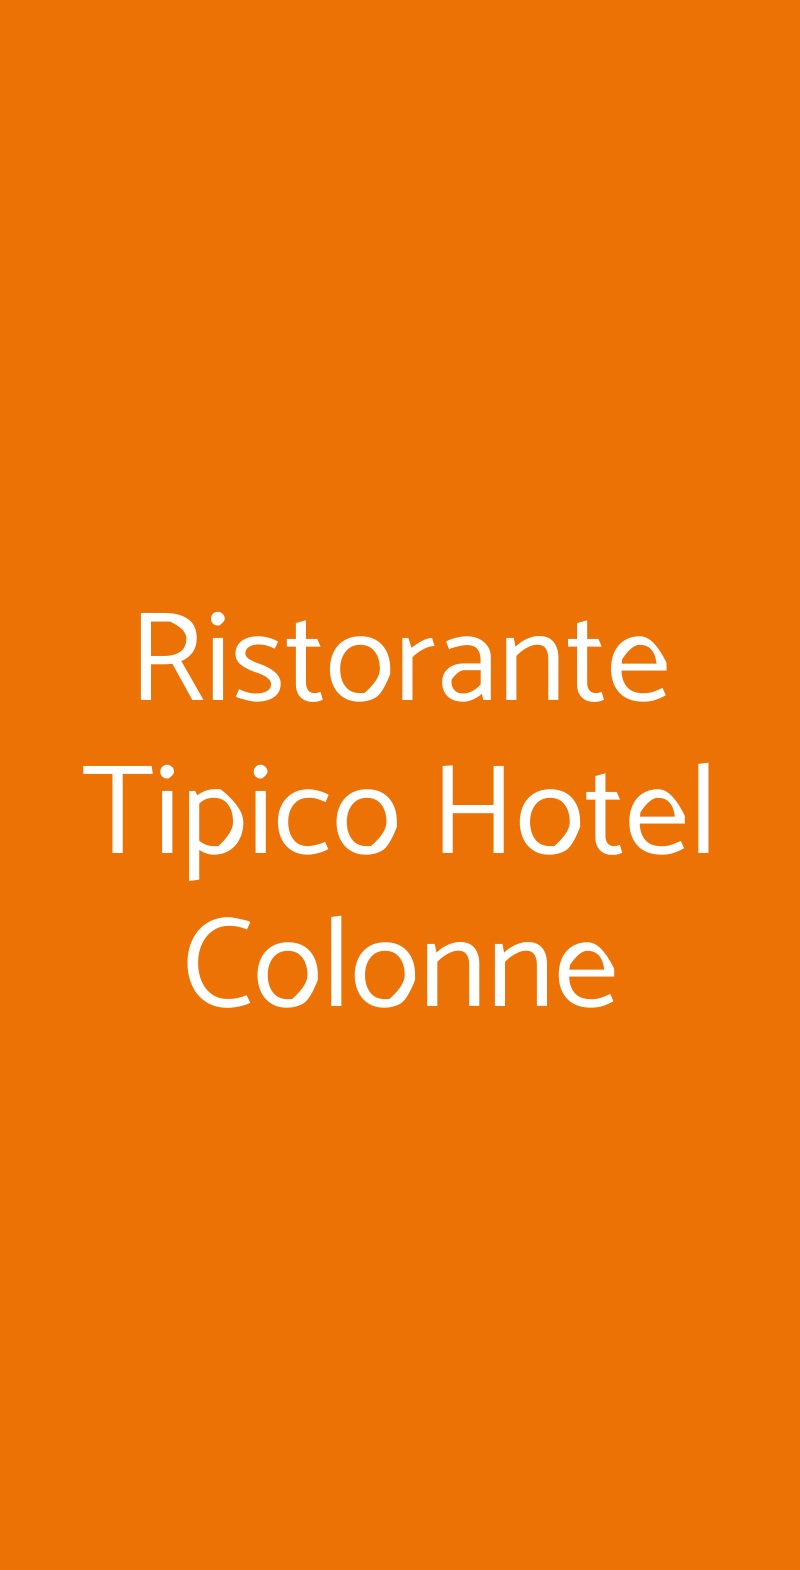 Ristorante Tipico Hotel Colonne San Giovanni Rotondo menù 1 pagina